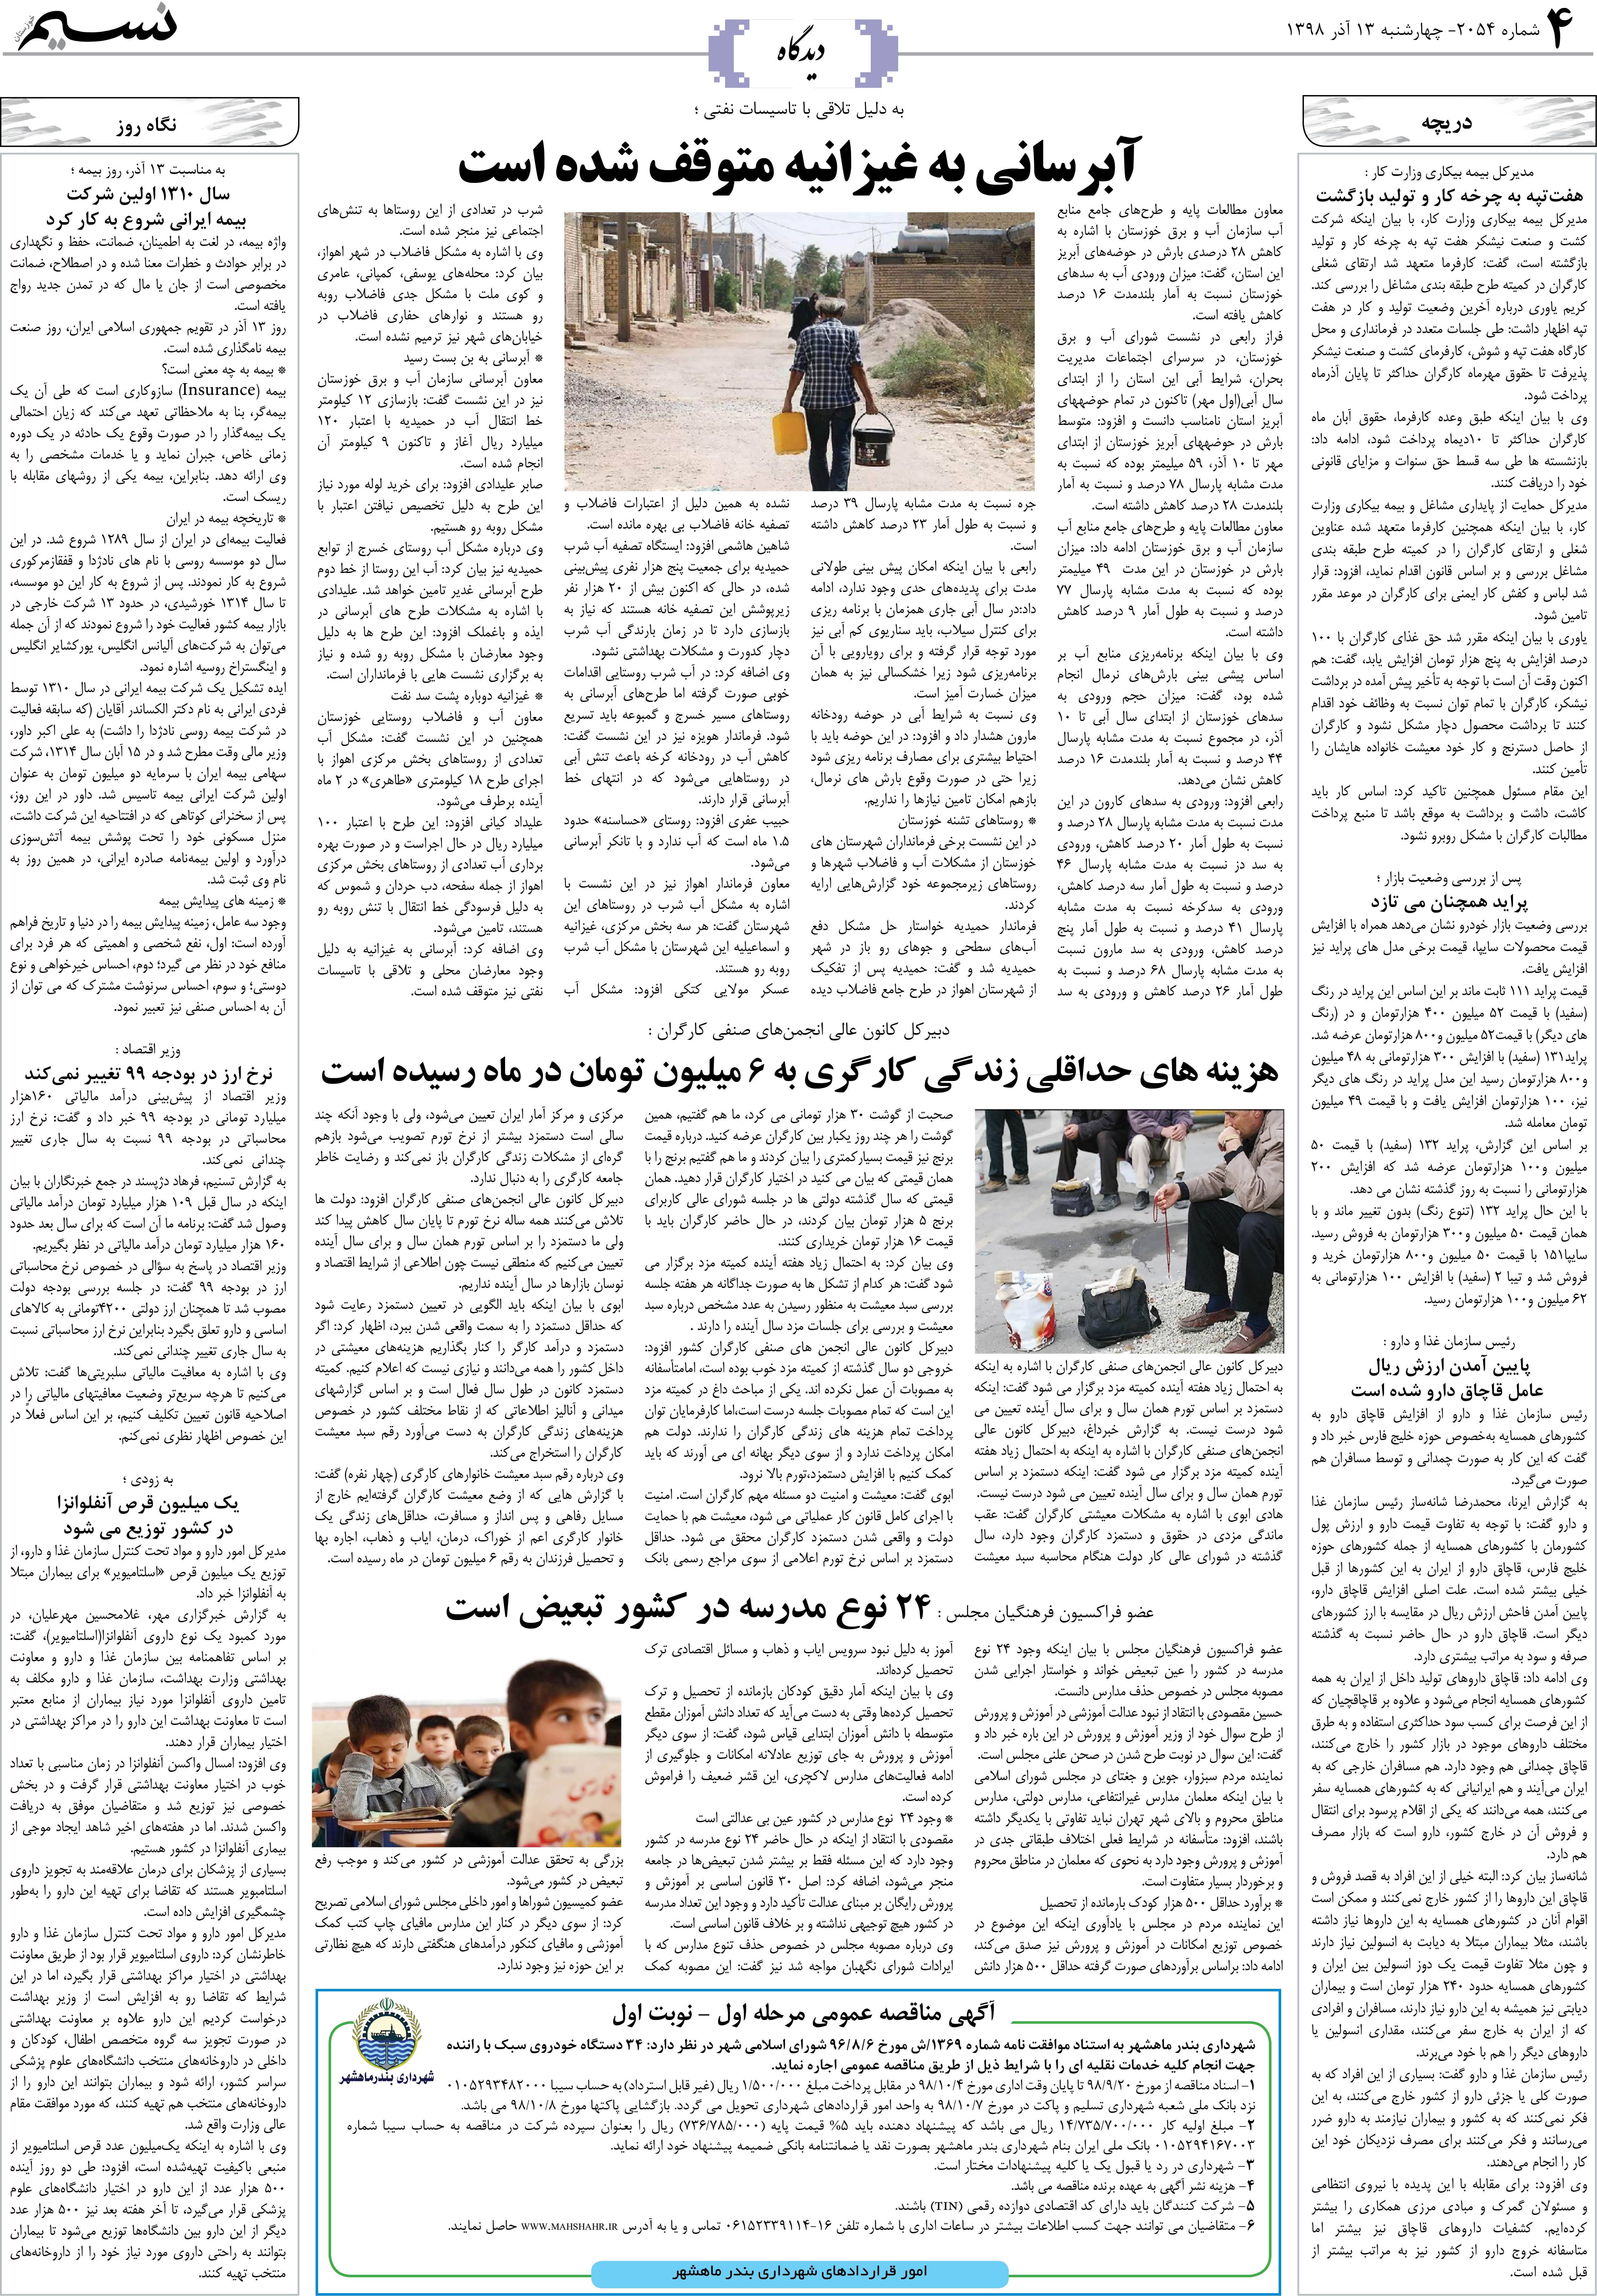 صفحه دیدگاه روزنامه نسیم شماره 2054